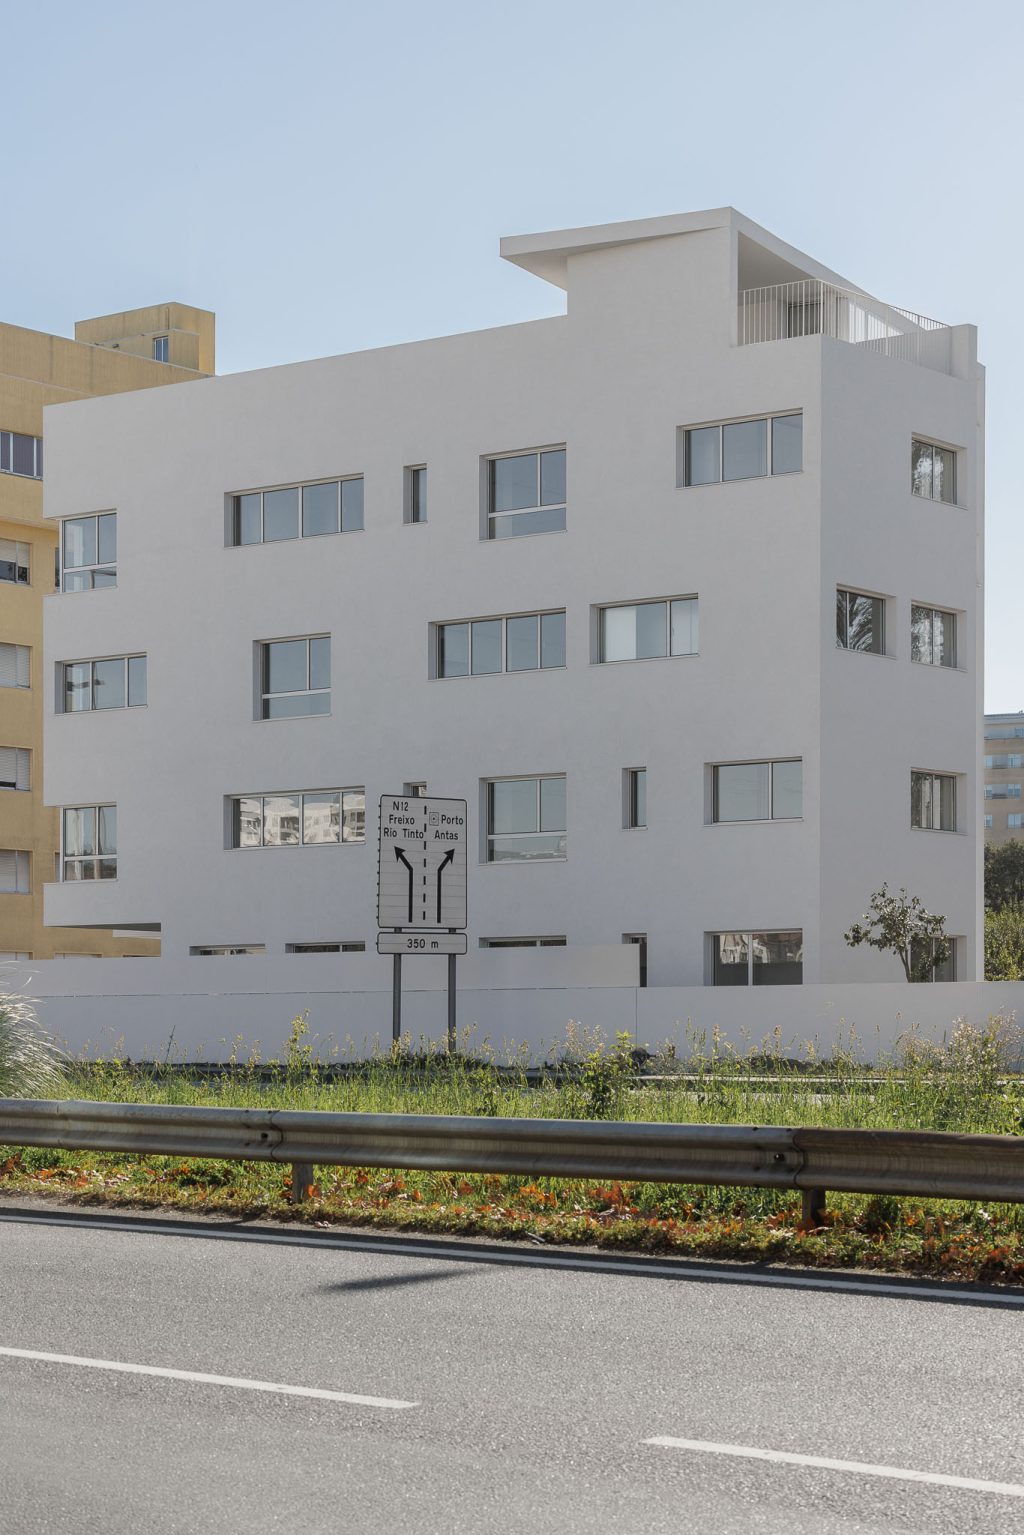 Nova Rio Housing šiuolaikinė architektūra, kuri meta iššūkį konvencijoms. Antonio Paulo Marquesas